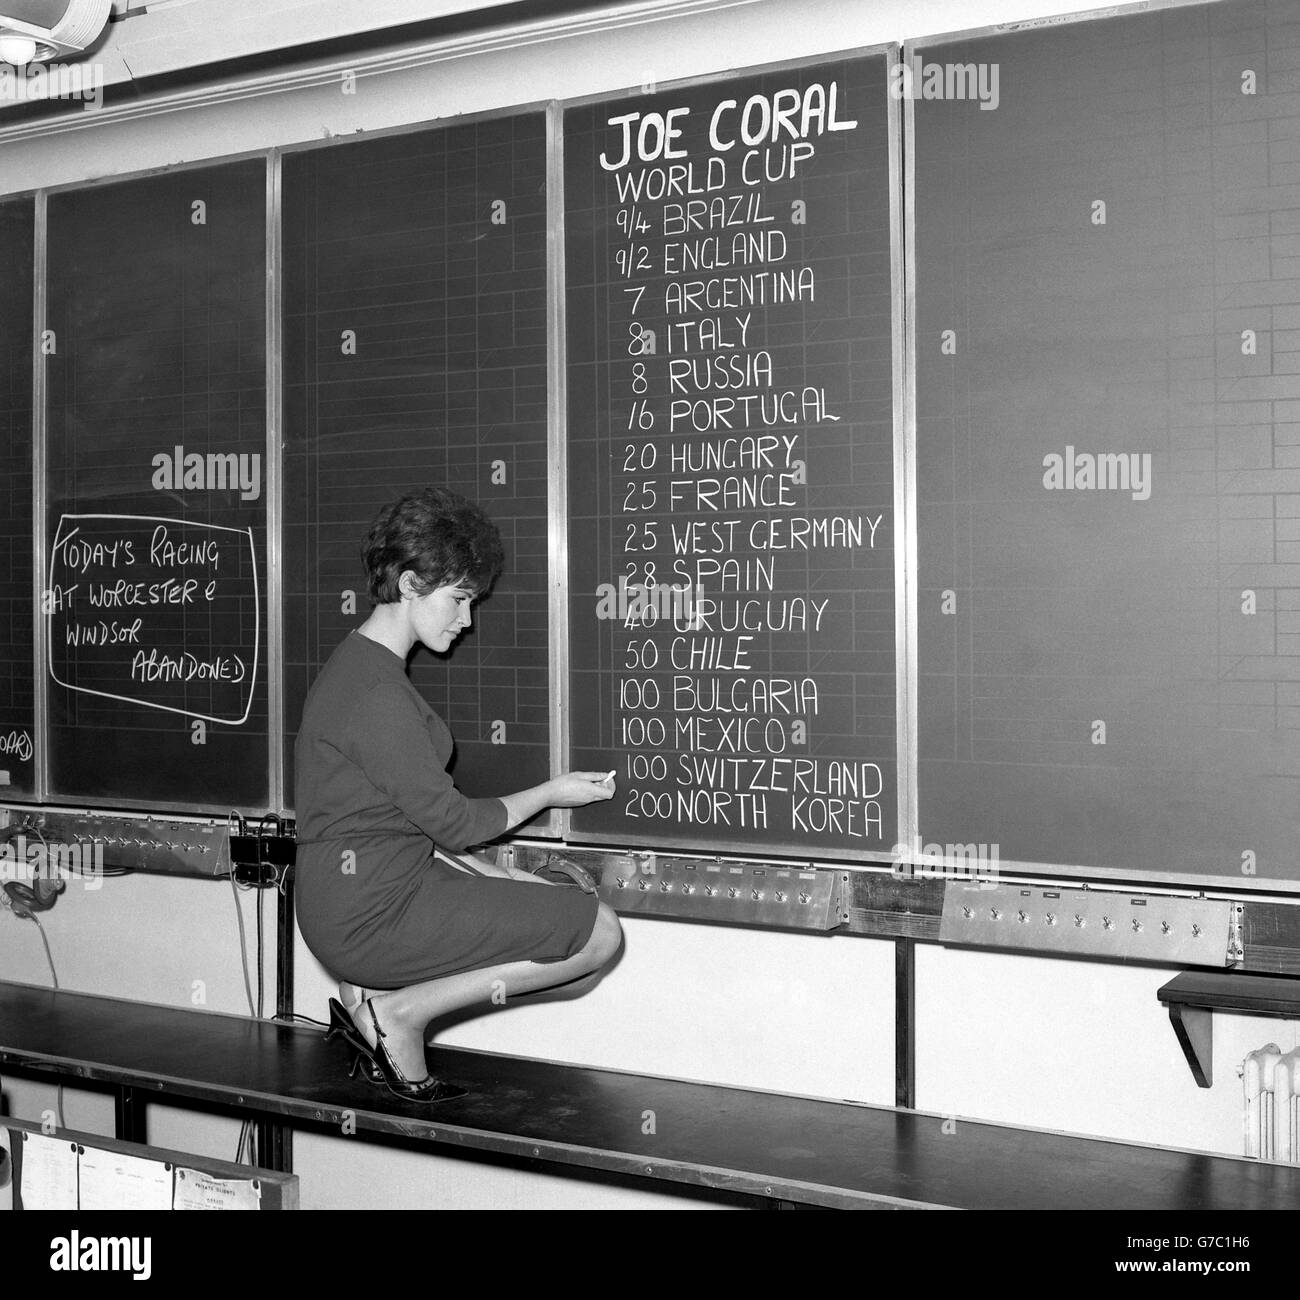 Fußball - Weltmeisterschaft 1966 - Joe Coral Wettquoten - Regent Street, London. Ein Mitarbeiter schreibt die Wettquoten auf einem Brett bei Joe Coral Ltd in der Regent Street in London. Stockfoto